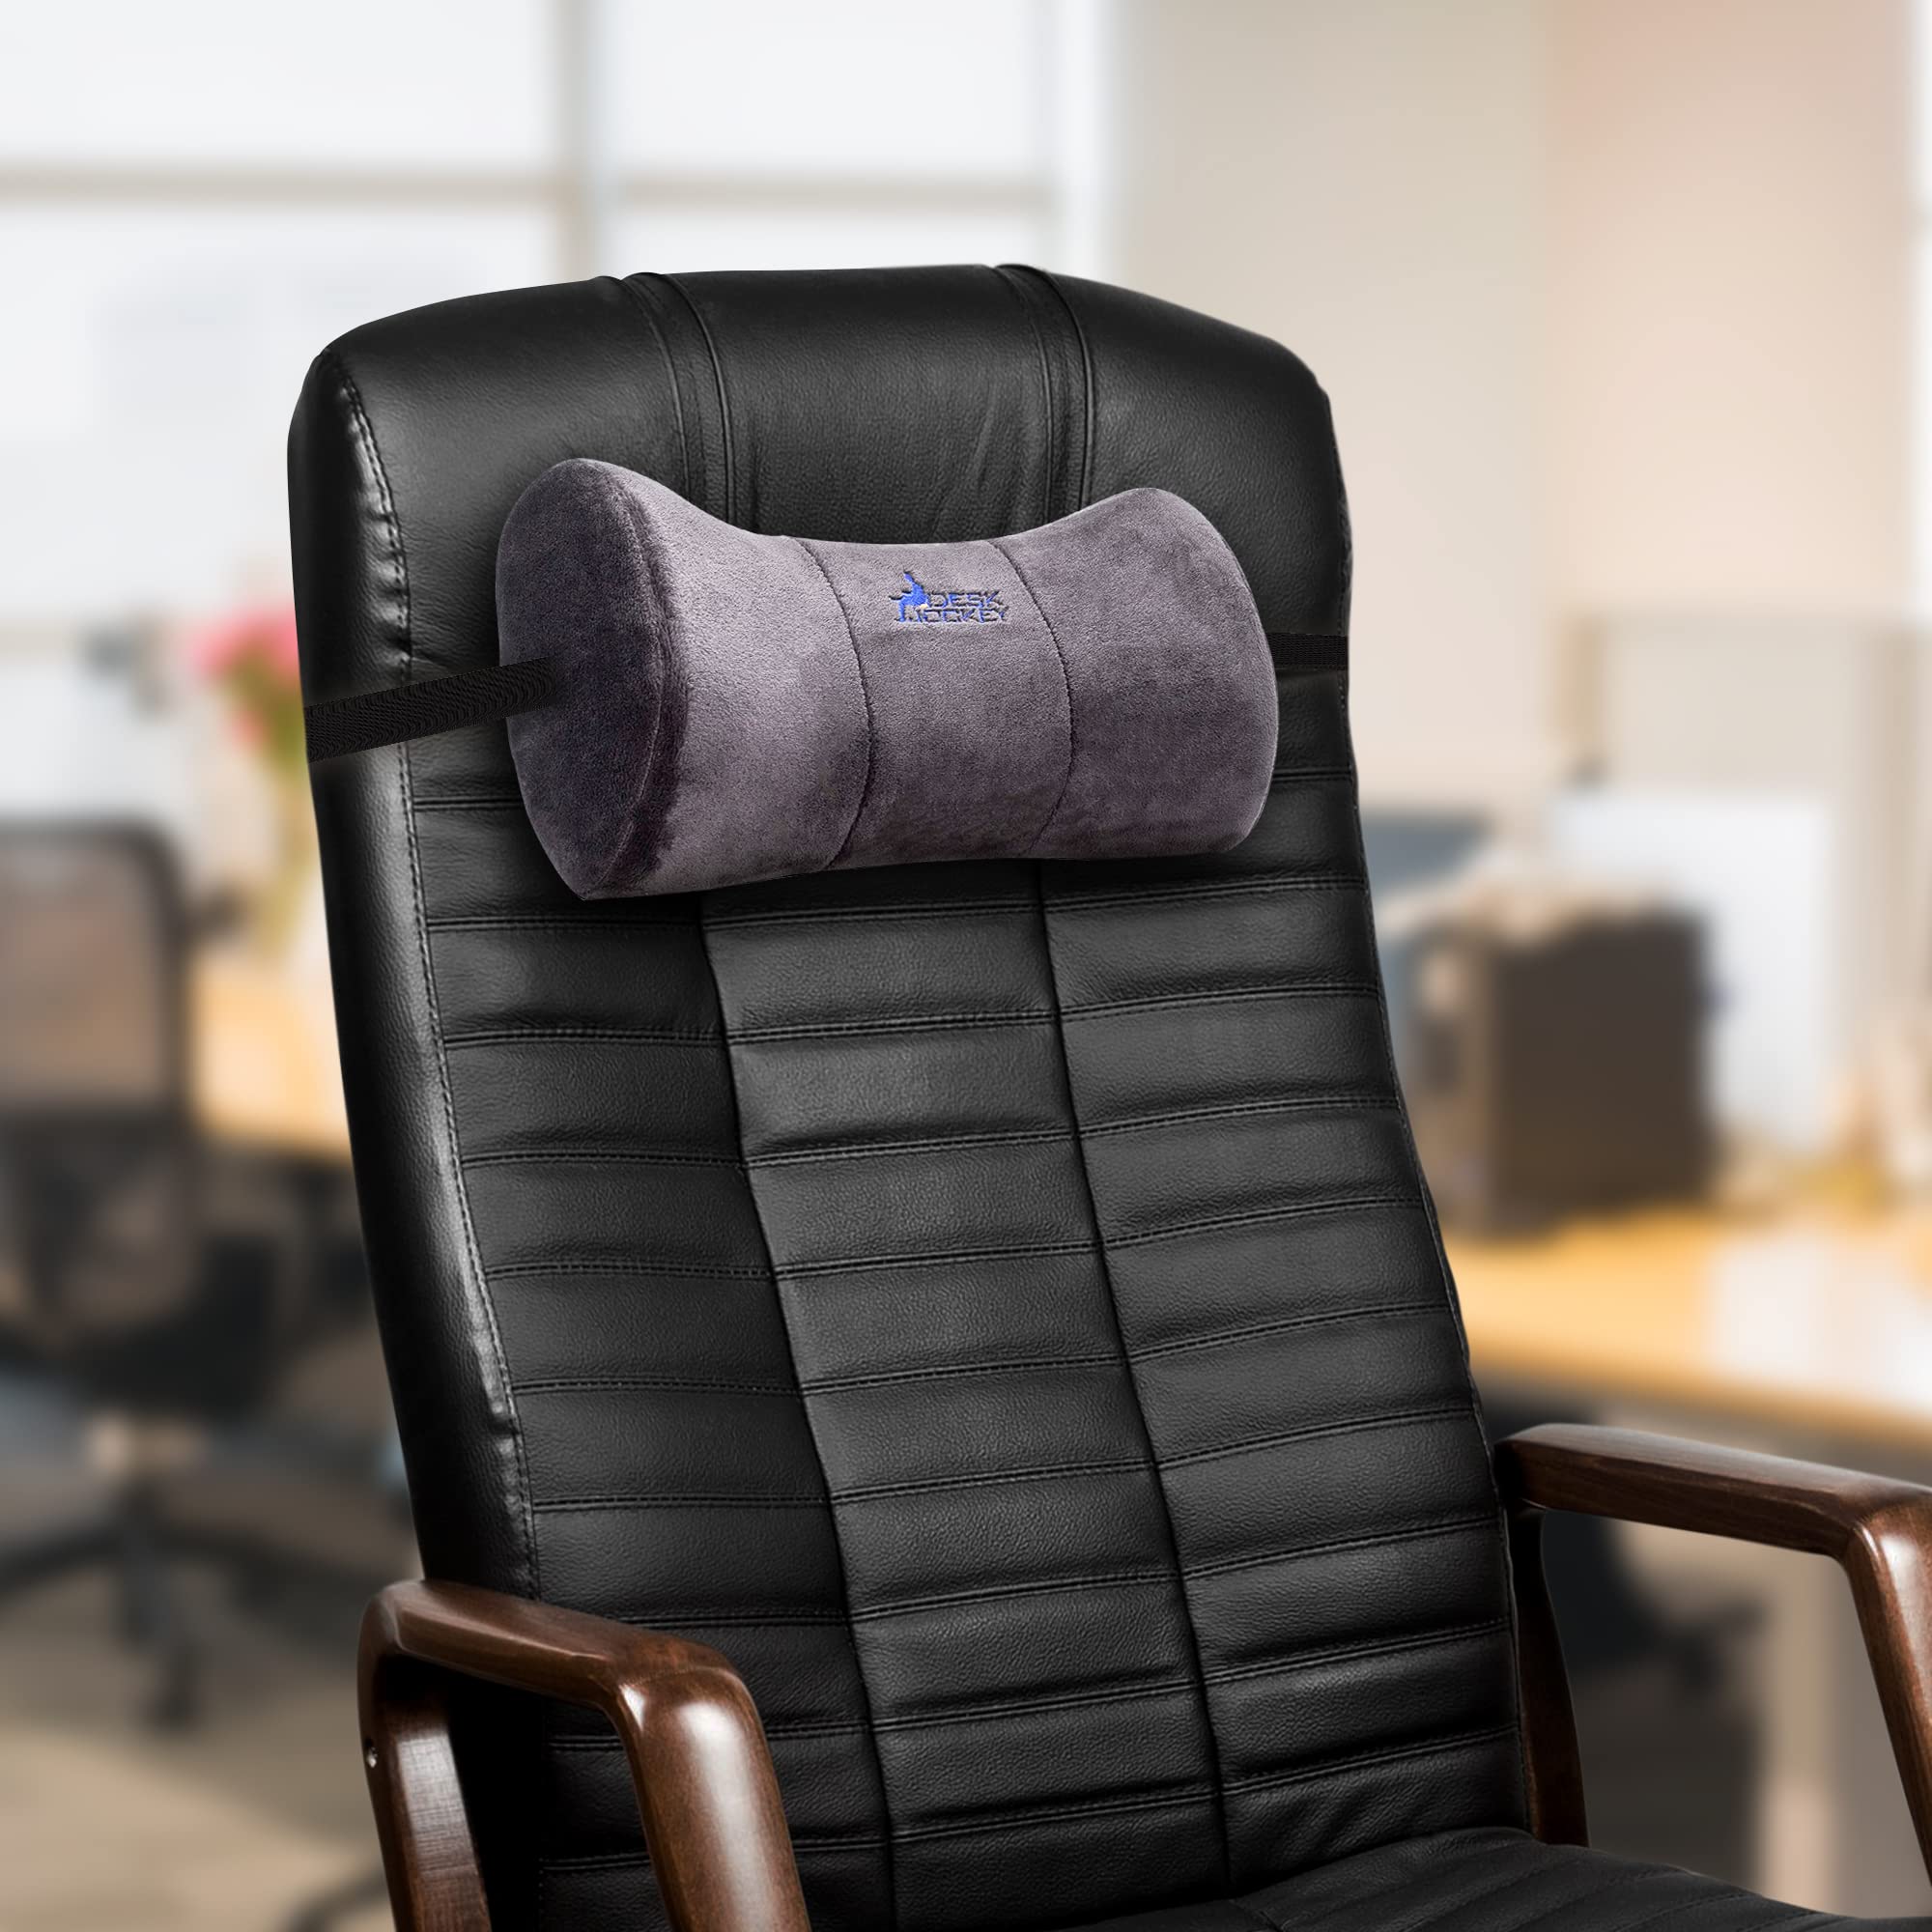 Neck cushion headrest retrofit headrest for sofa couch armchair grey